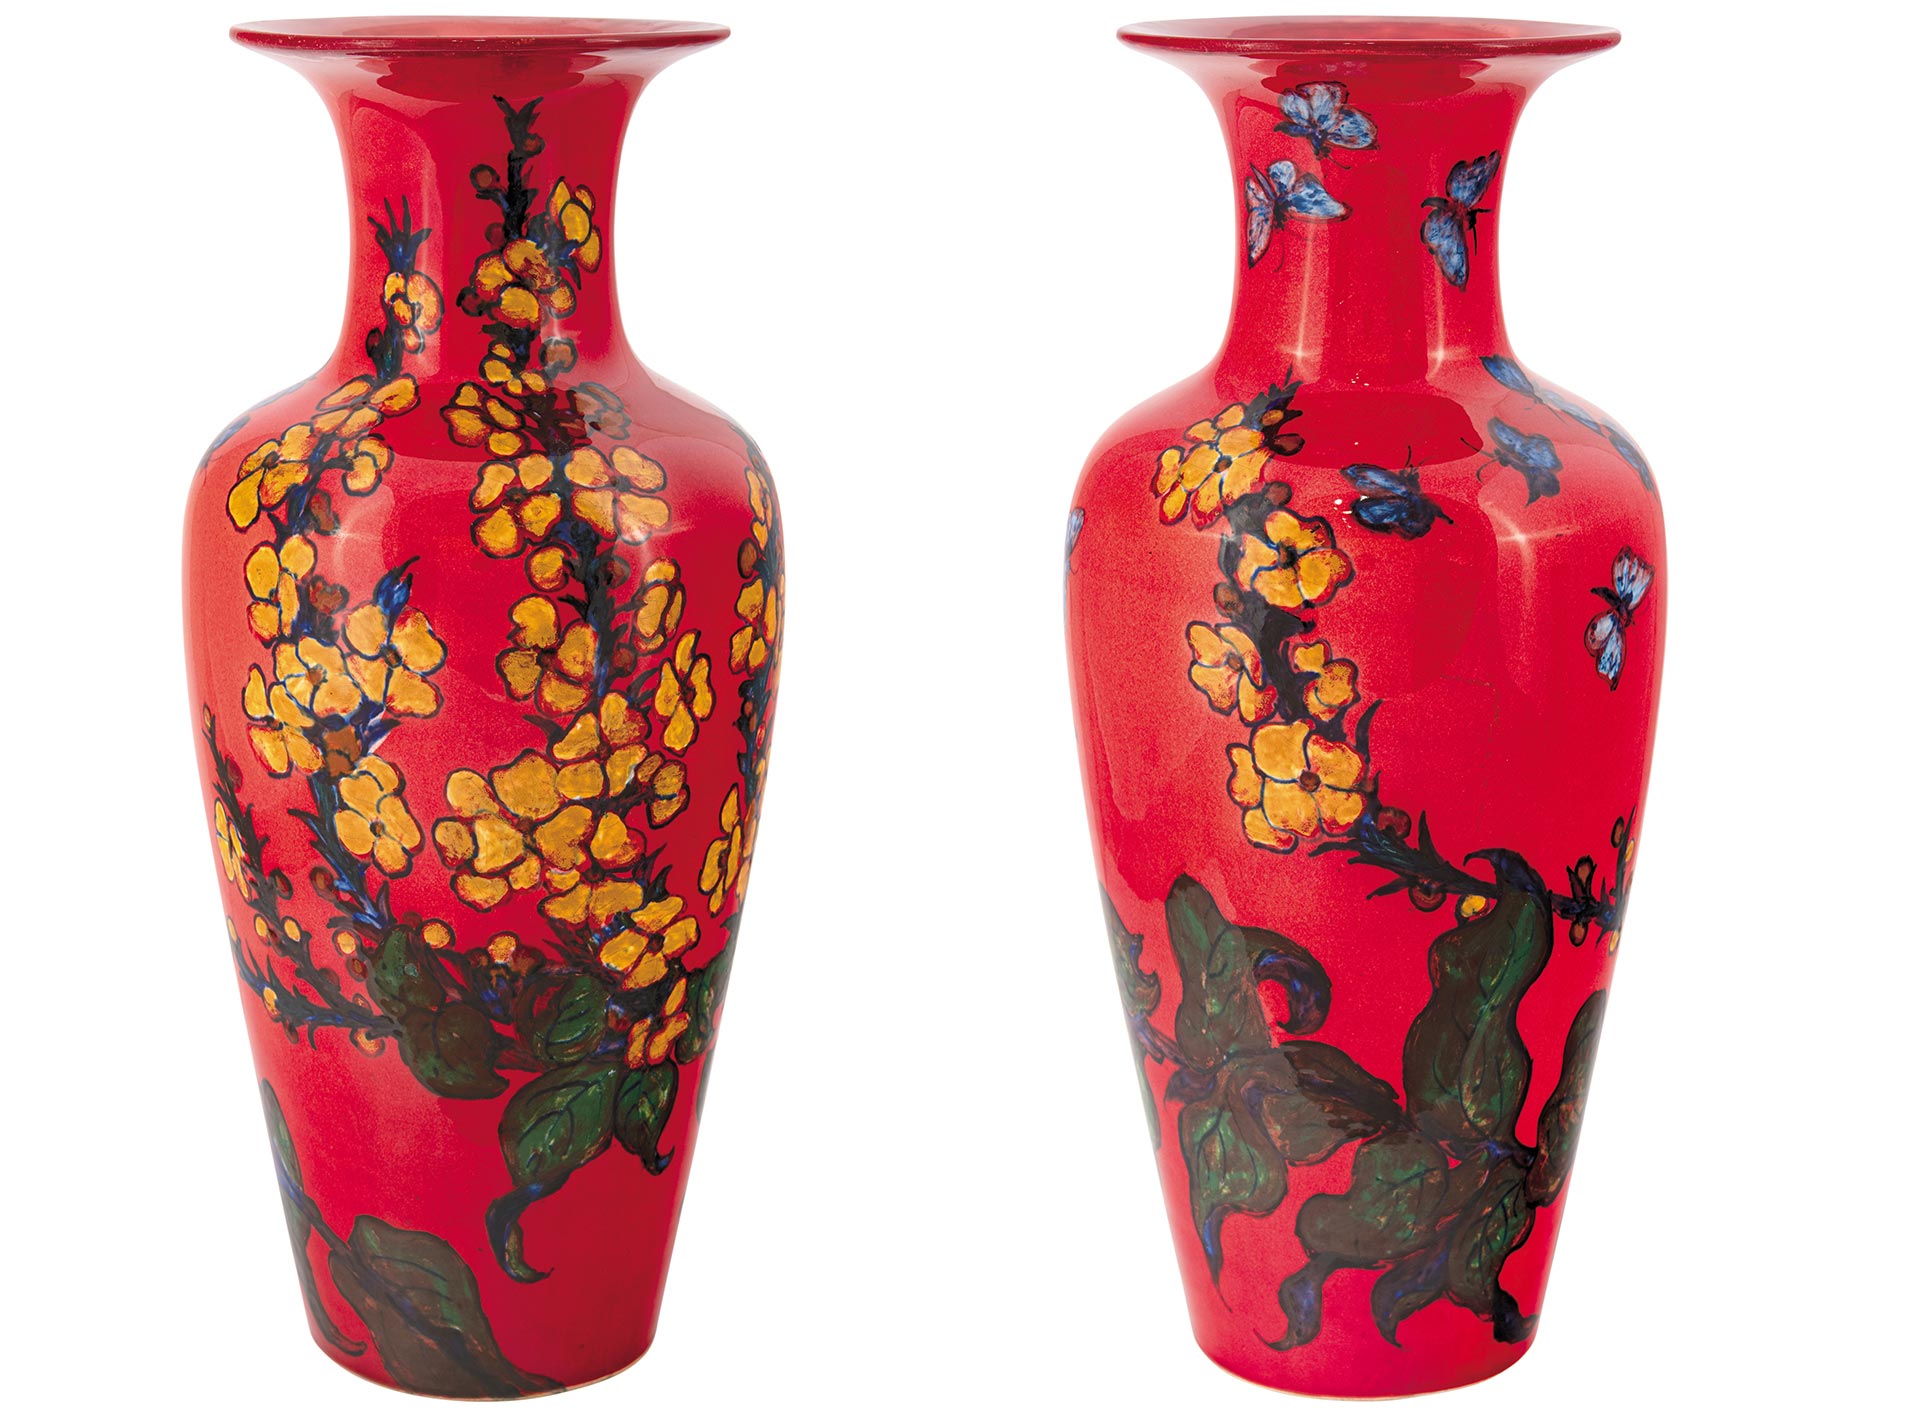 Zsolnay Vase with Japanese Decor, Zsolnay, 1925